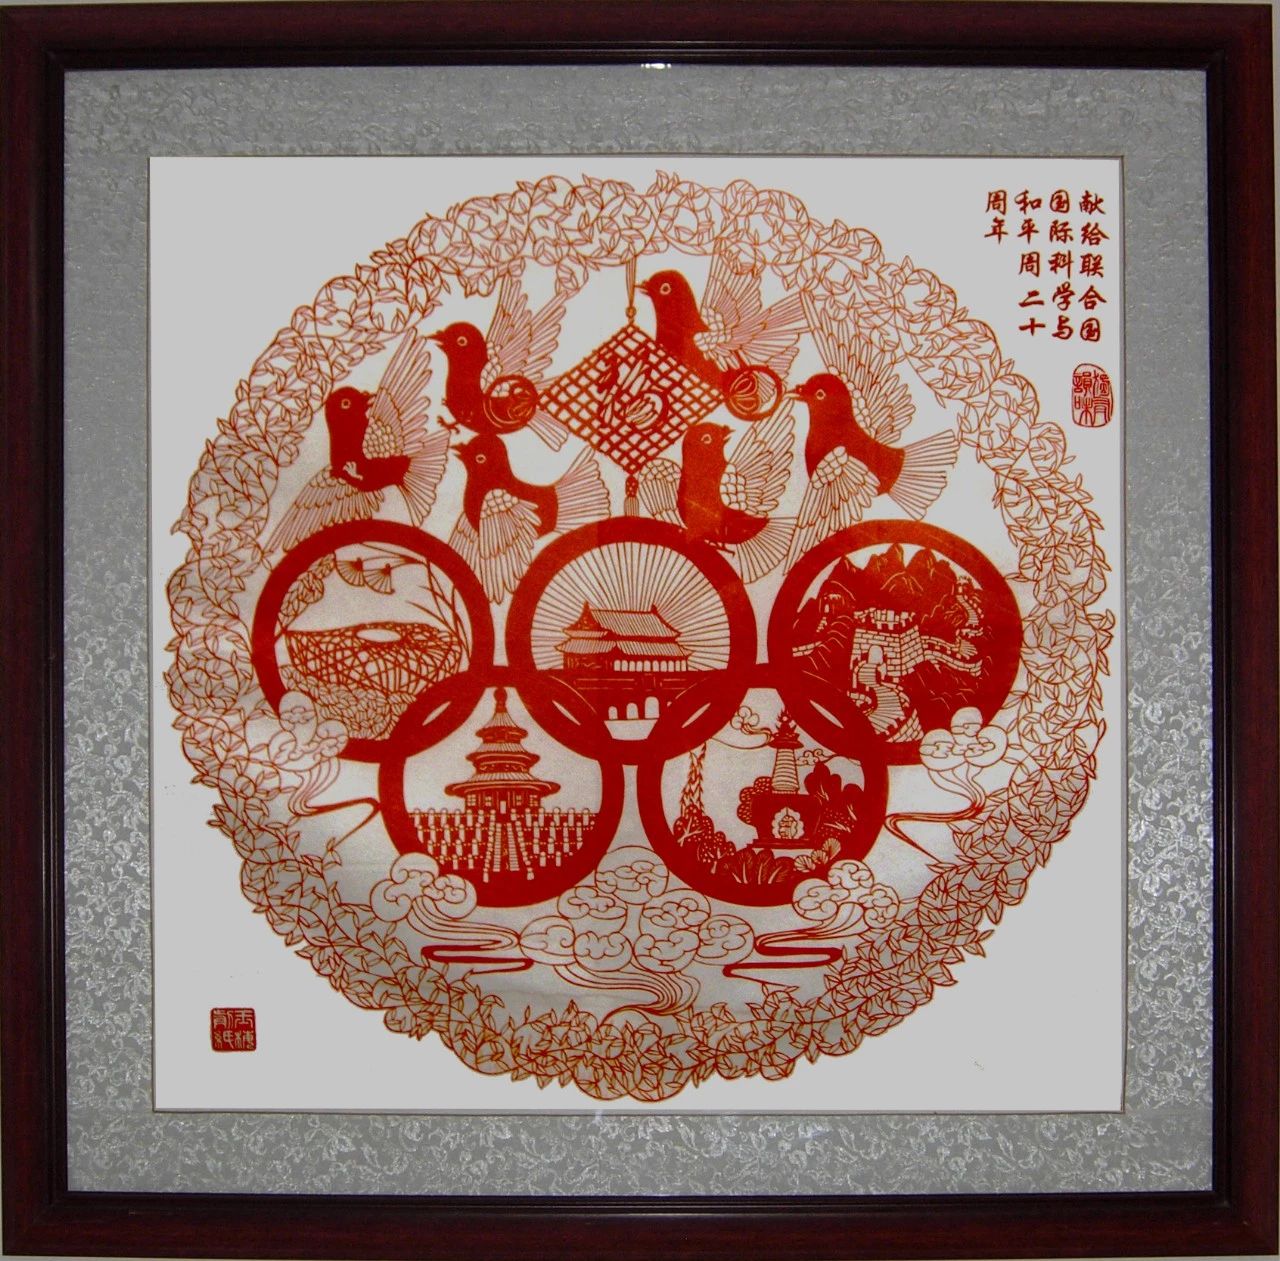 六只可爱的和平鸽环绕在一个鲜红的中国结周围,下方是奥运五环标志,每